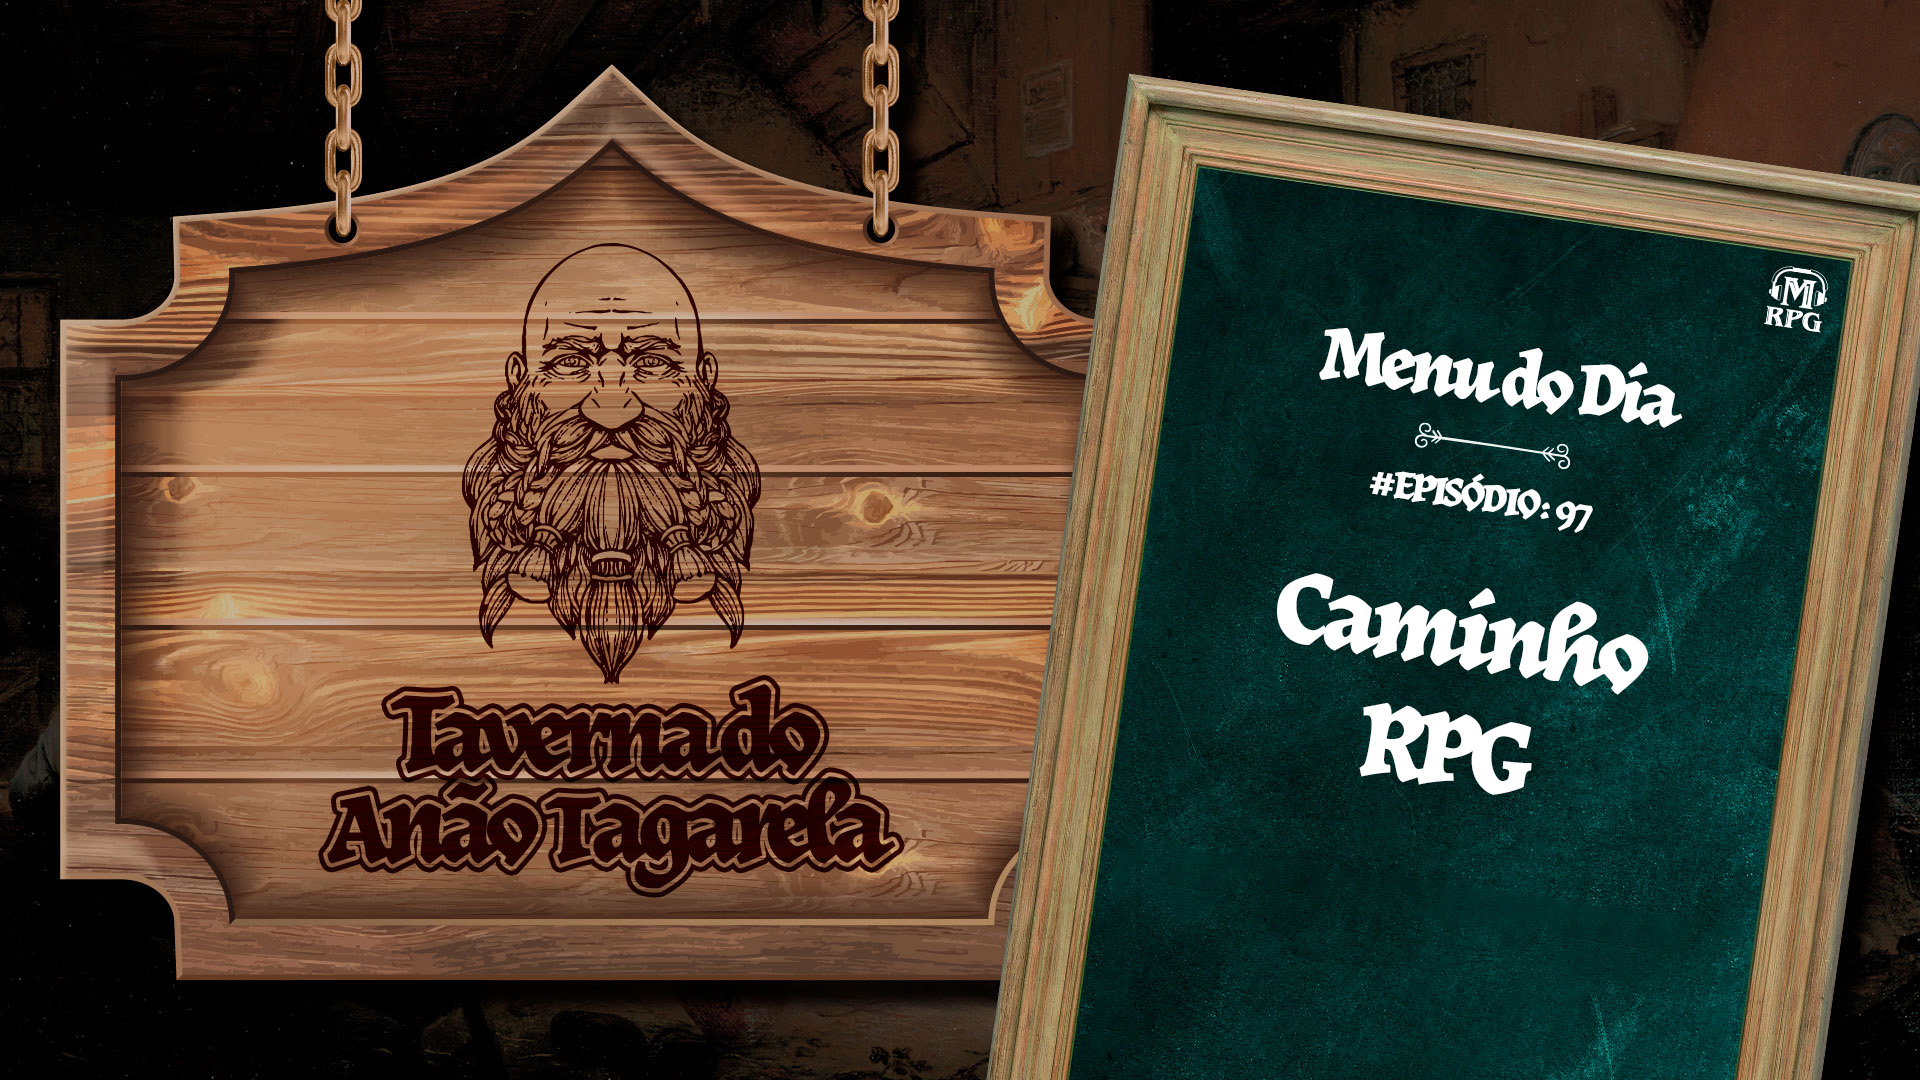 Caminho RPG – Taverna do Anão Tagarela #97